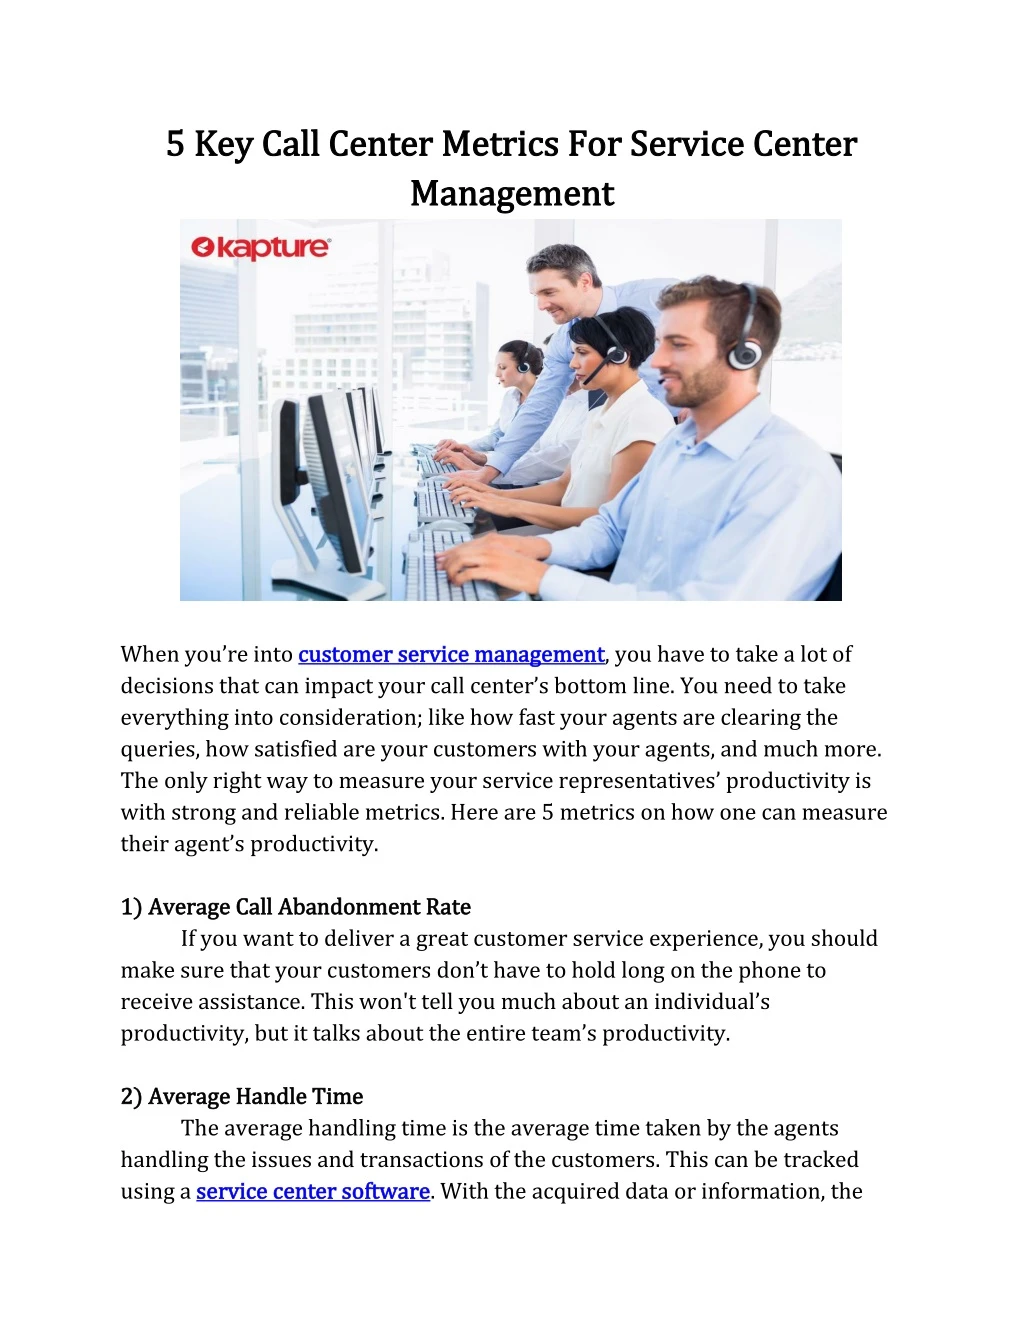 5 key call center metrics for service center